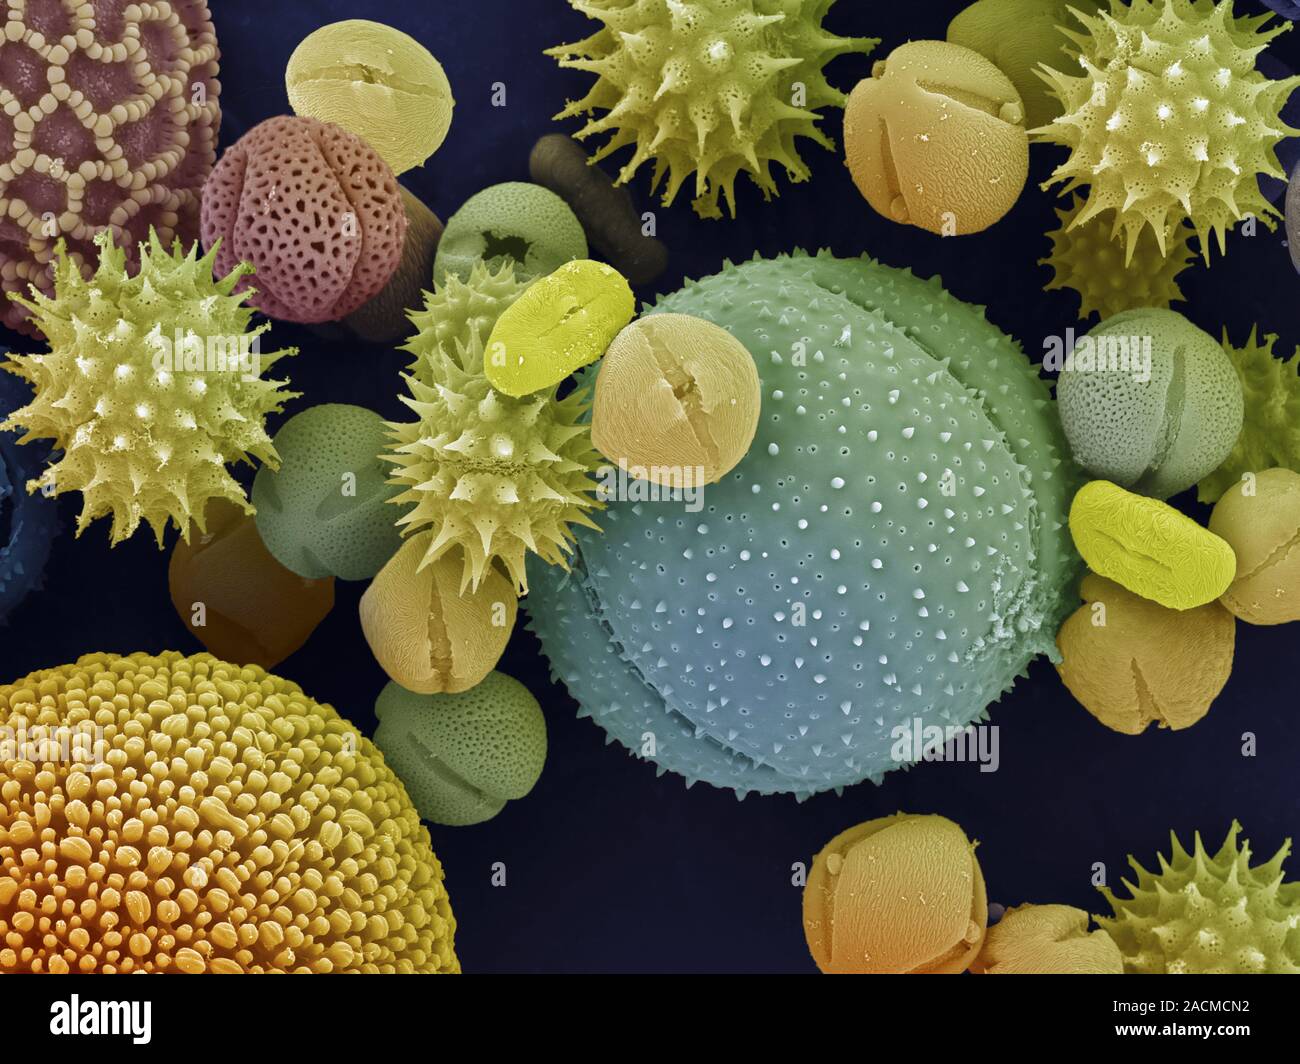 Как выглядит пыльца. Пыльцевые зерна под микроскопом. Пыльца цветковых растений под микроскопом. Пыльца покрытосеменных под микроскопом. Пыльца микроскопия палинология.